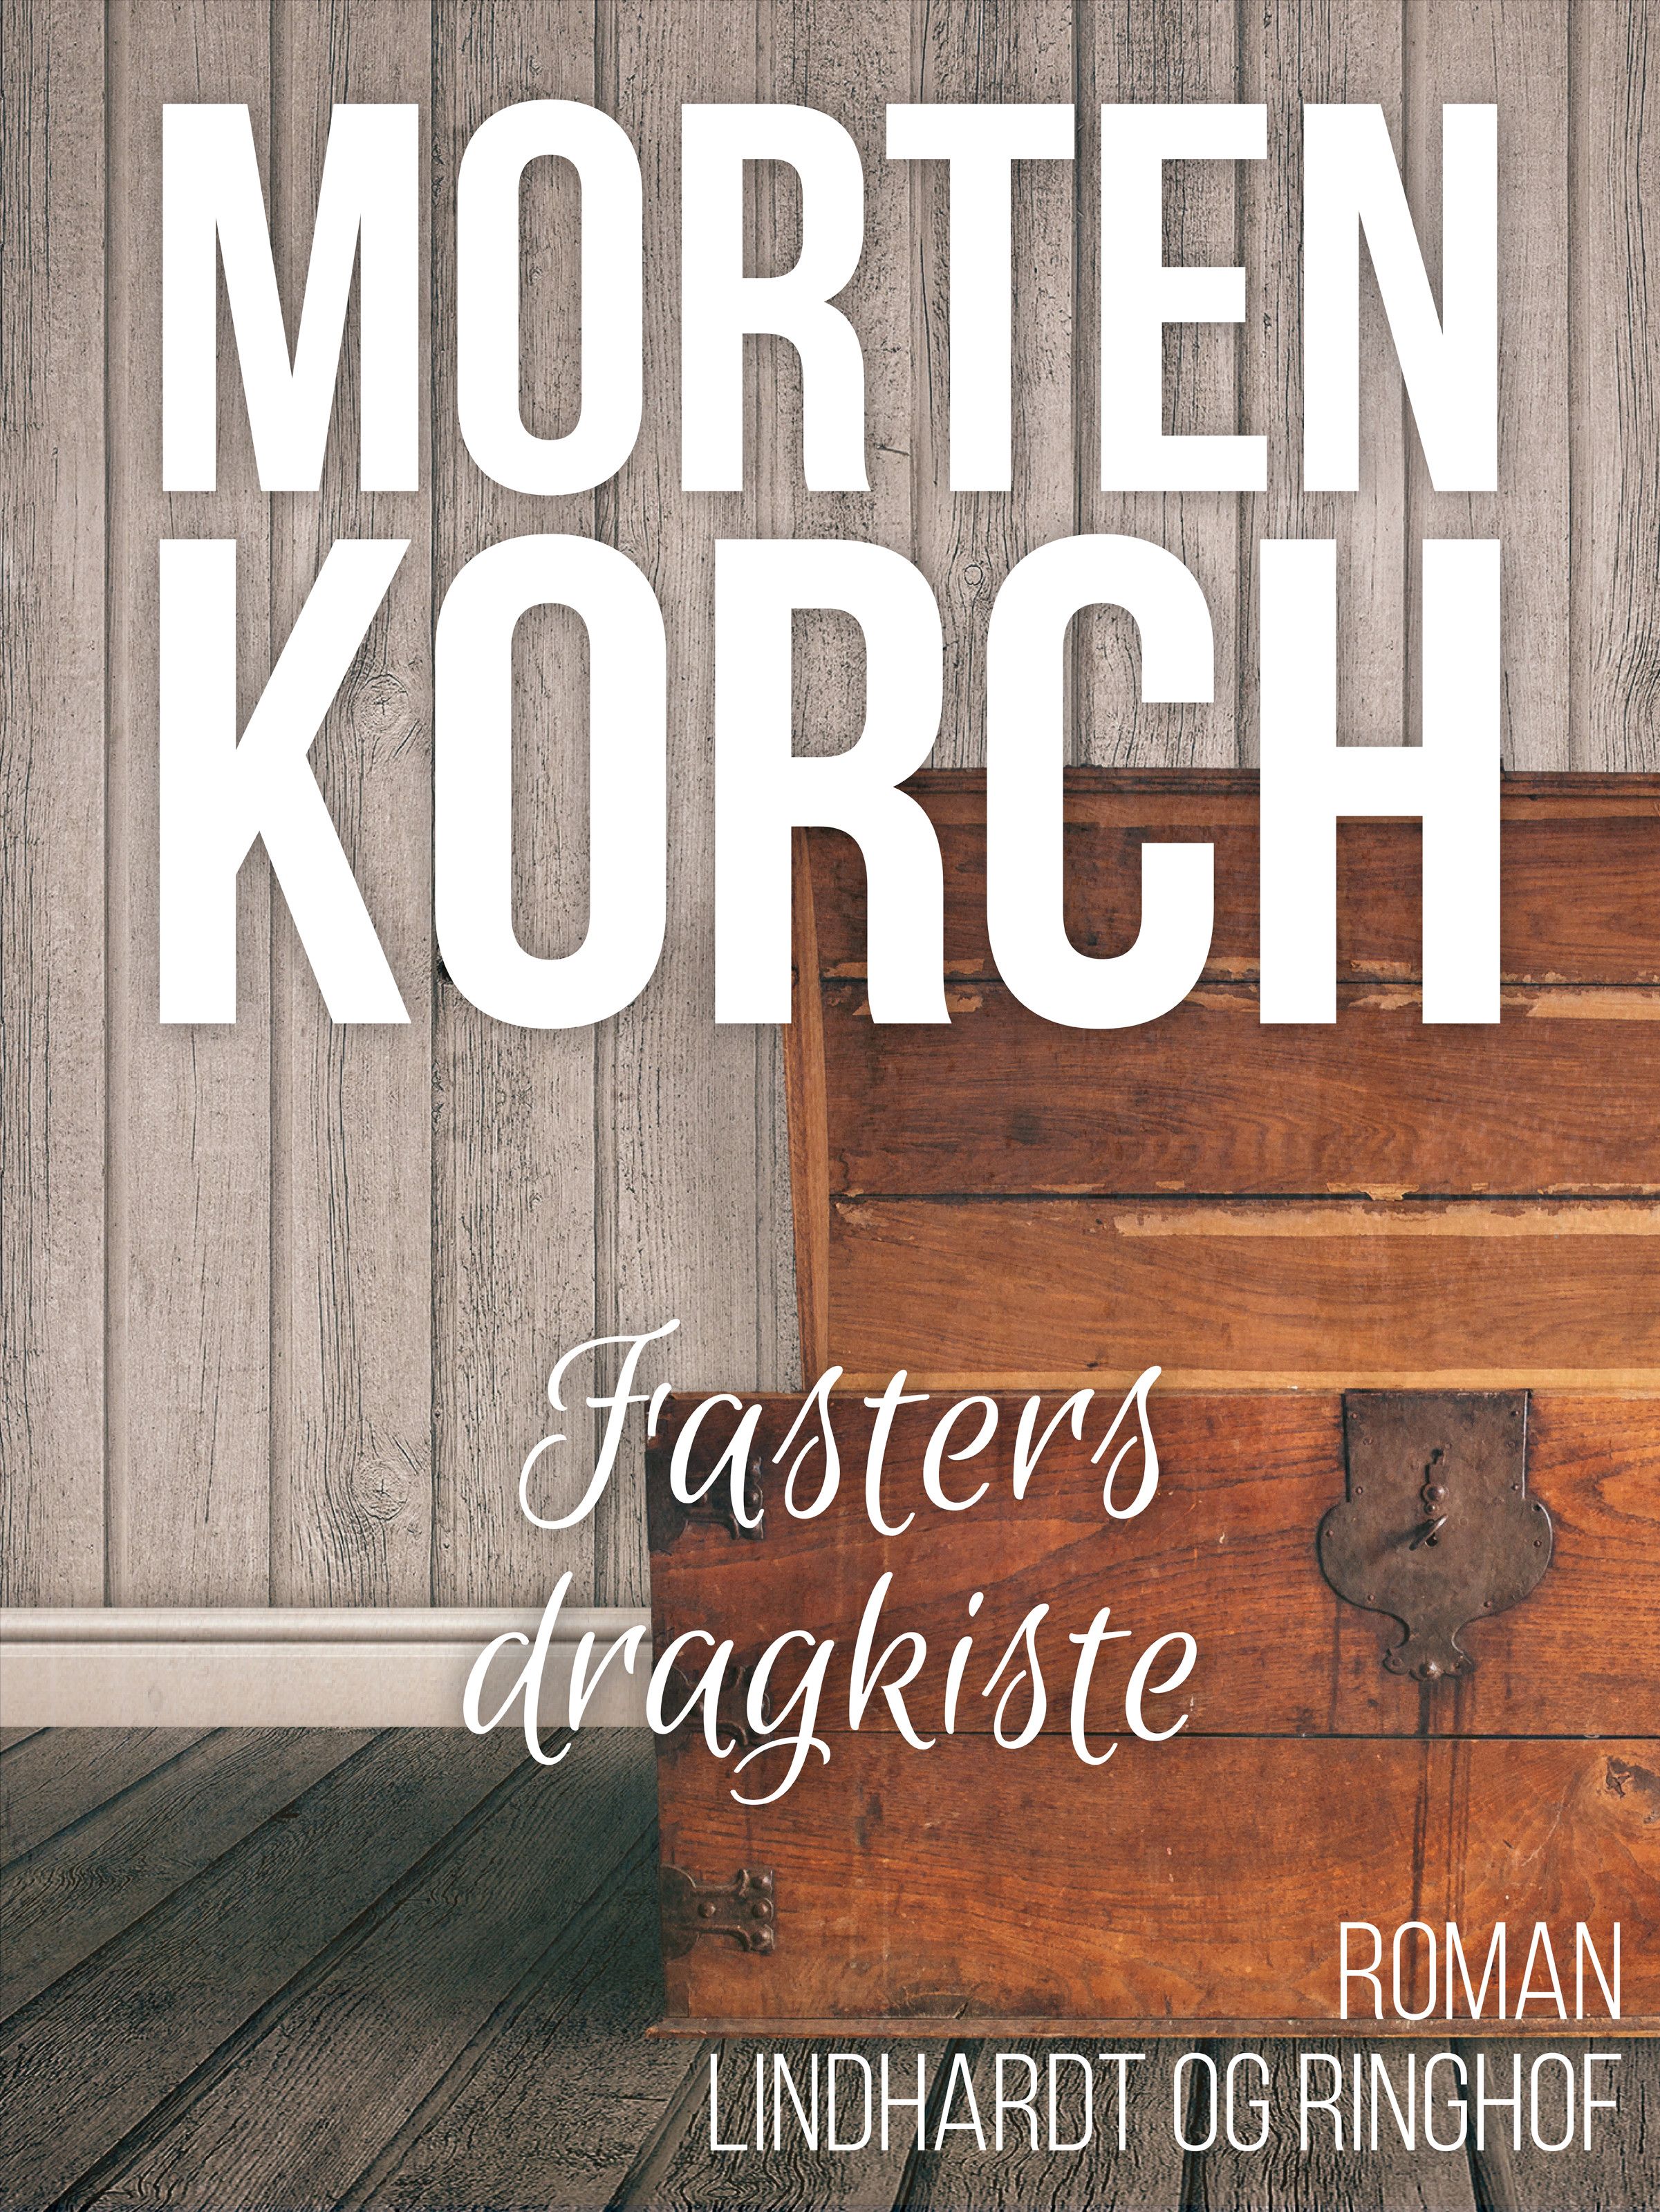 Fasters dragkiste, ljudbok av Morten Korch